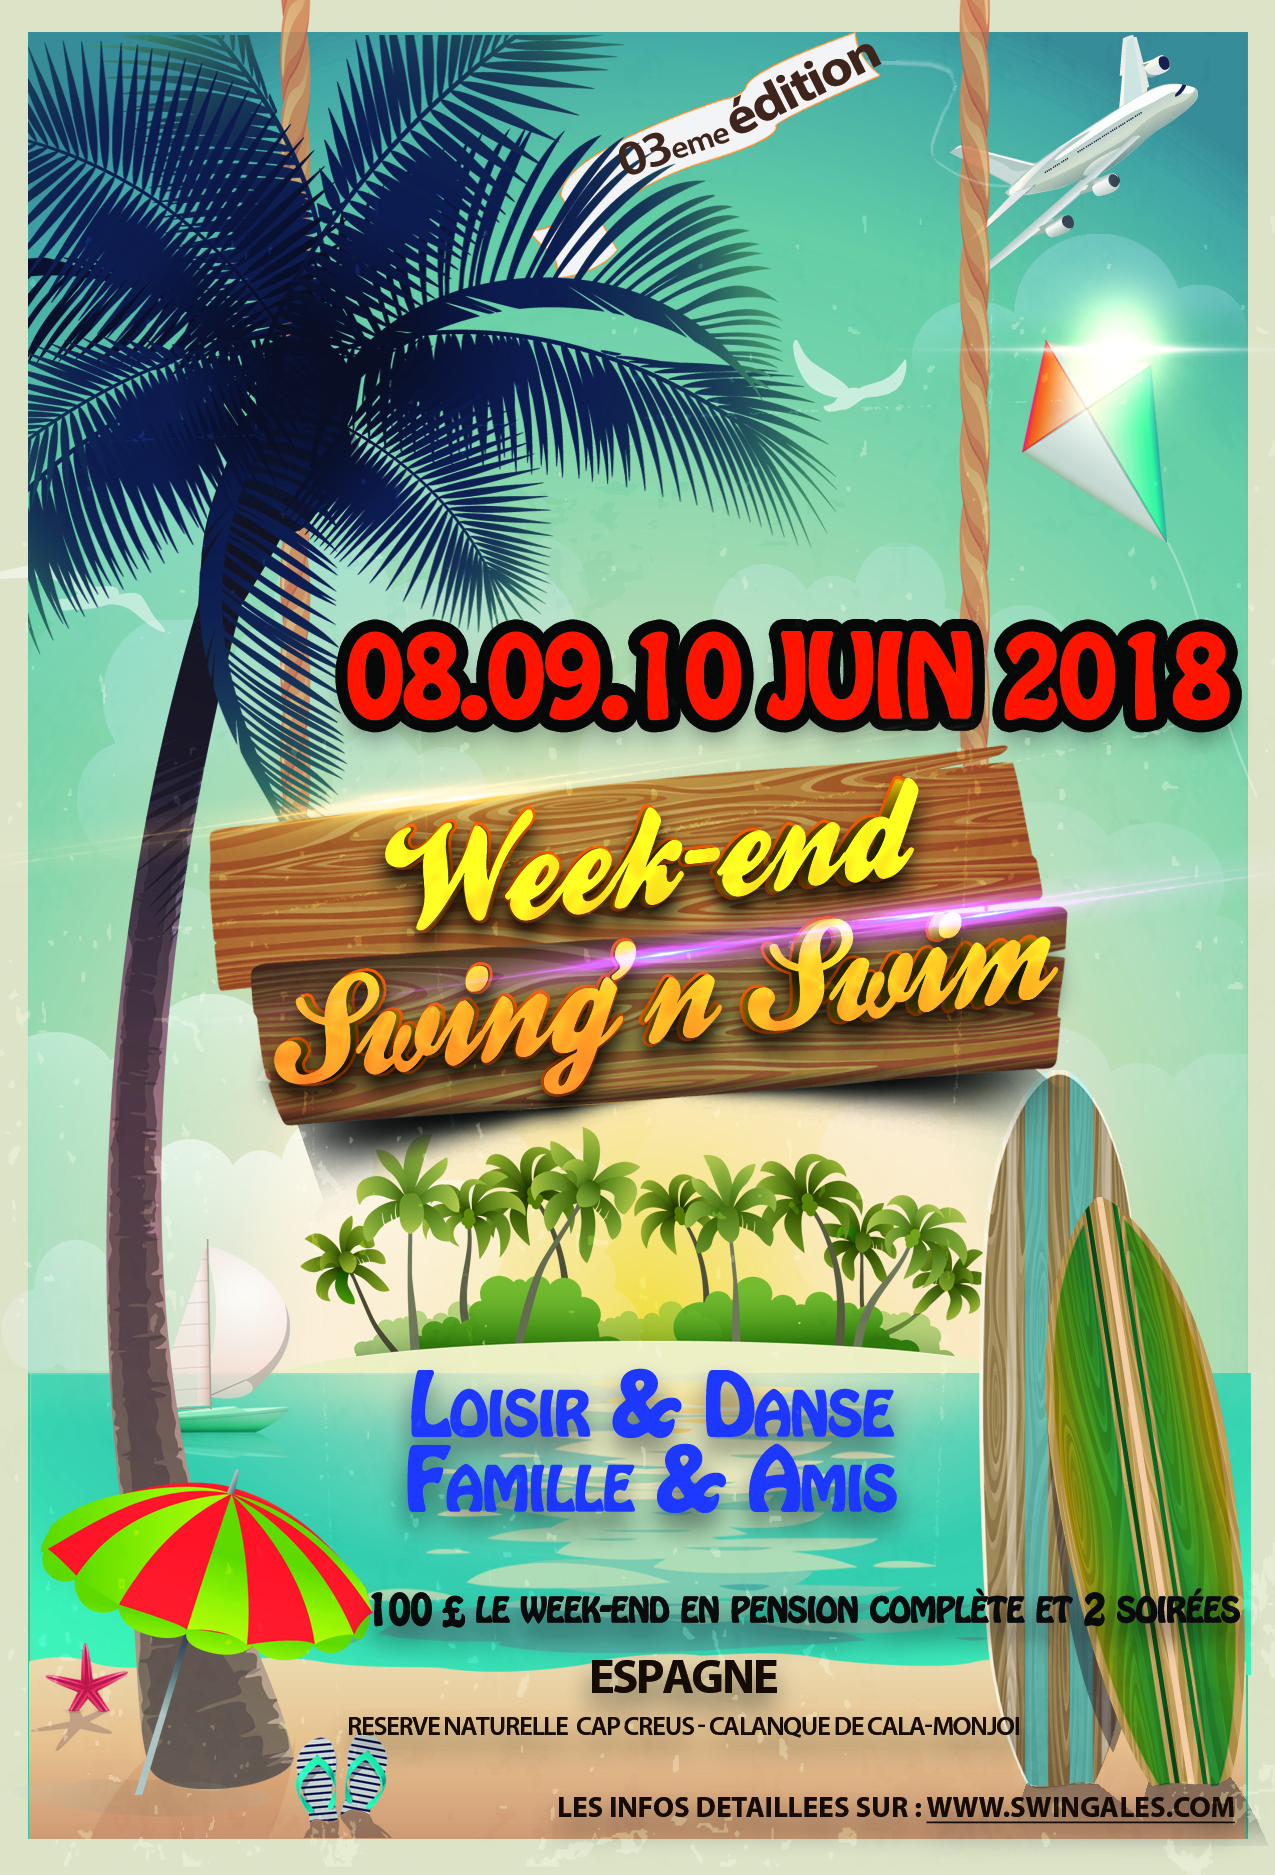 Week-end Swing'n Swim - Spain - 4 eme édition